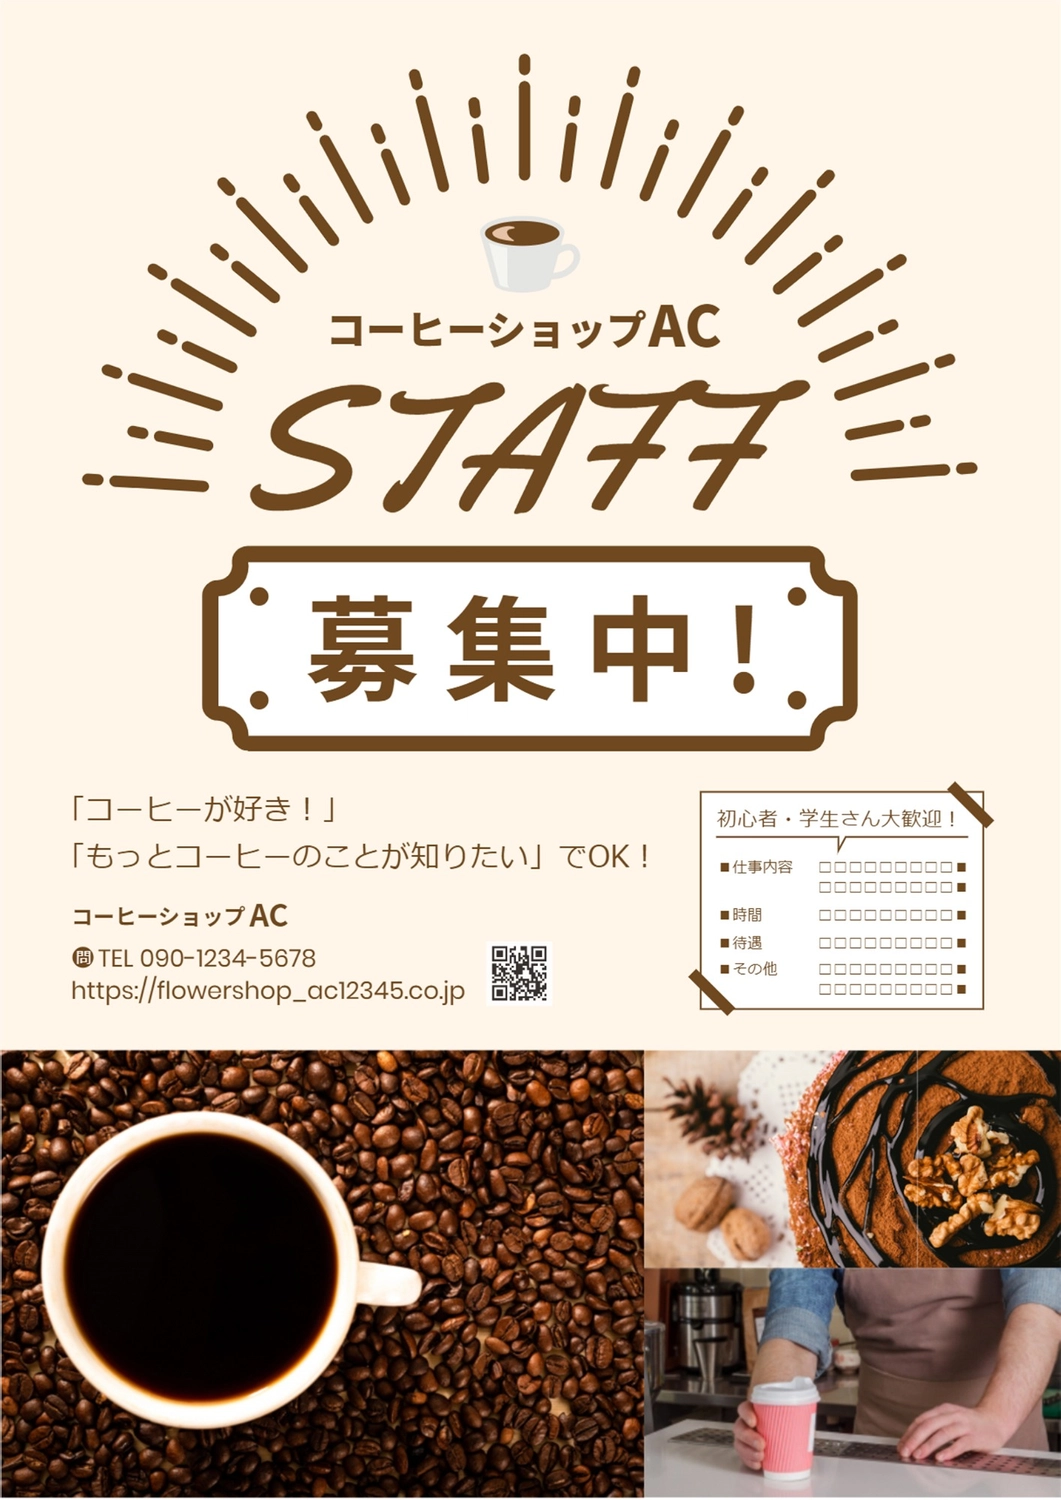 写真を使ったコーヒーショップのチラシ
, photograph, QR code, Brown, Flyer template